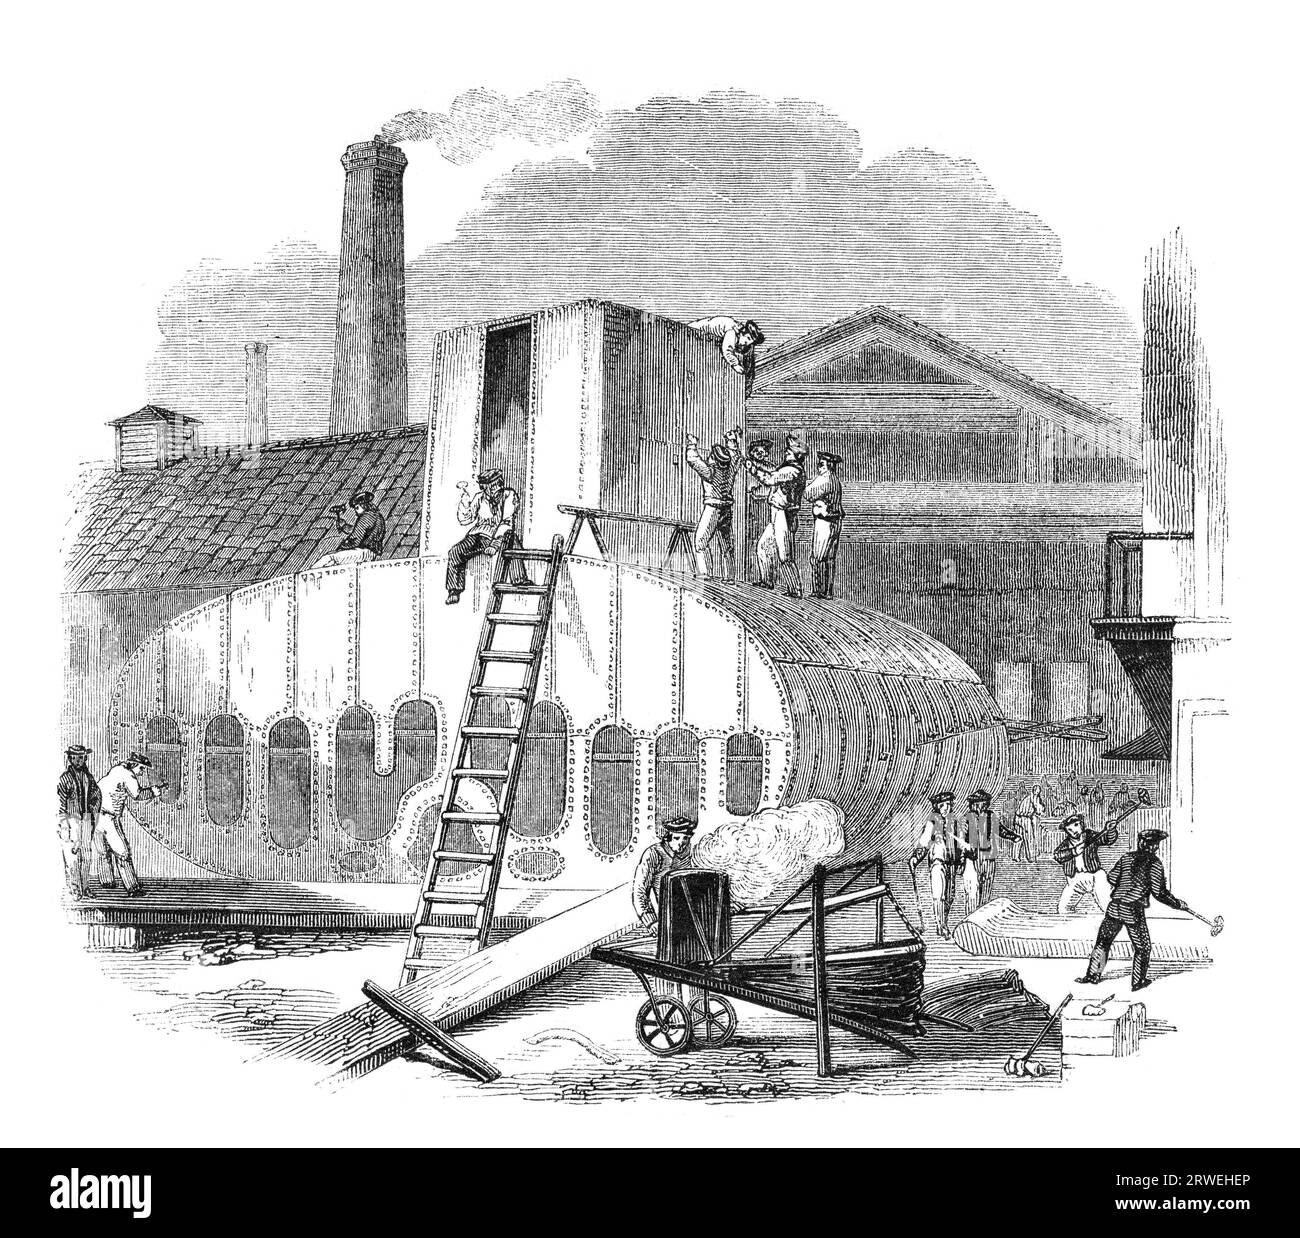 Une journée à la Clyde travaux de bateau à vapeur : fabrication de chaudières à vapeur, fonderie Vulcan. Gravure d'un magazine britannique imprimé en 1843 Banque D'Images